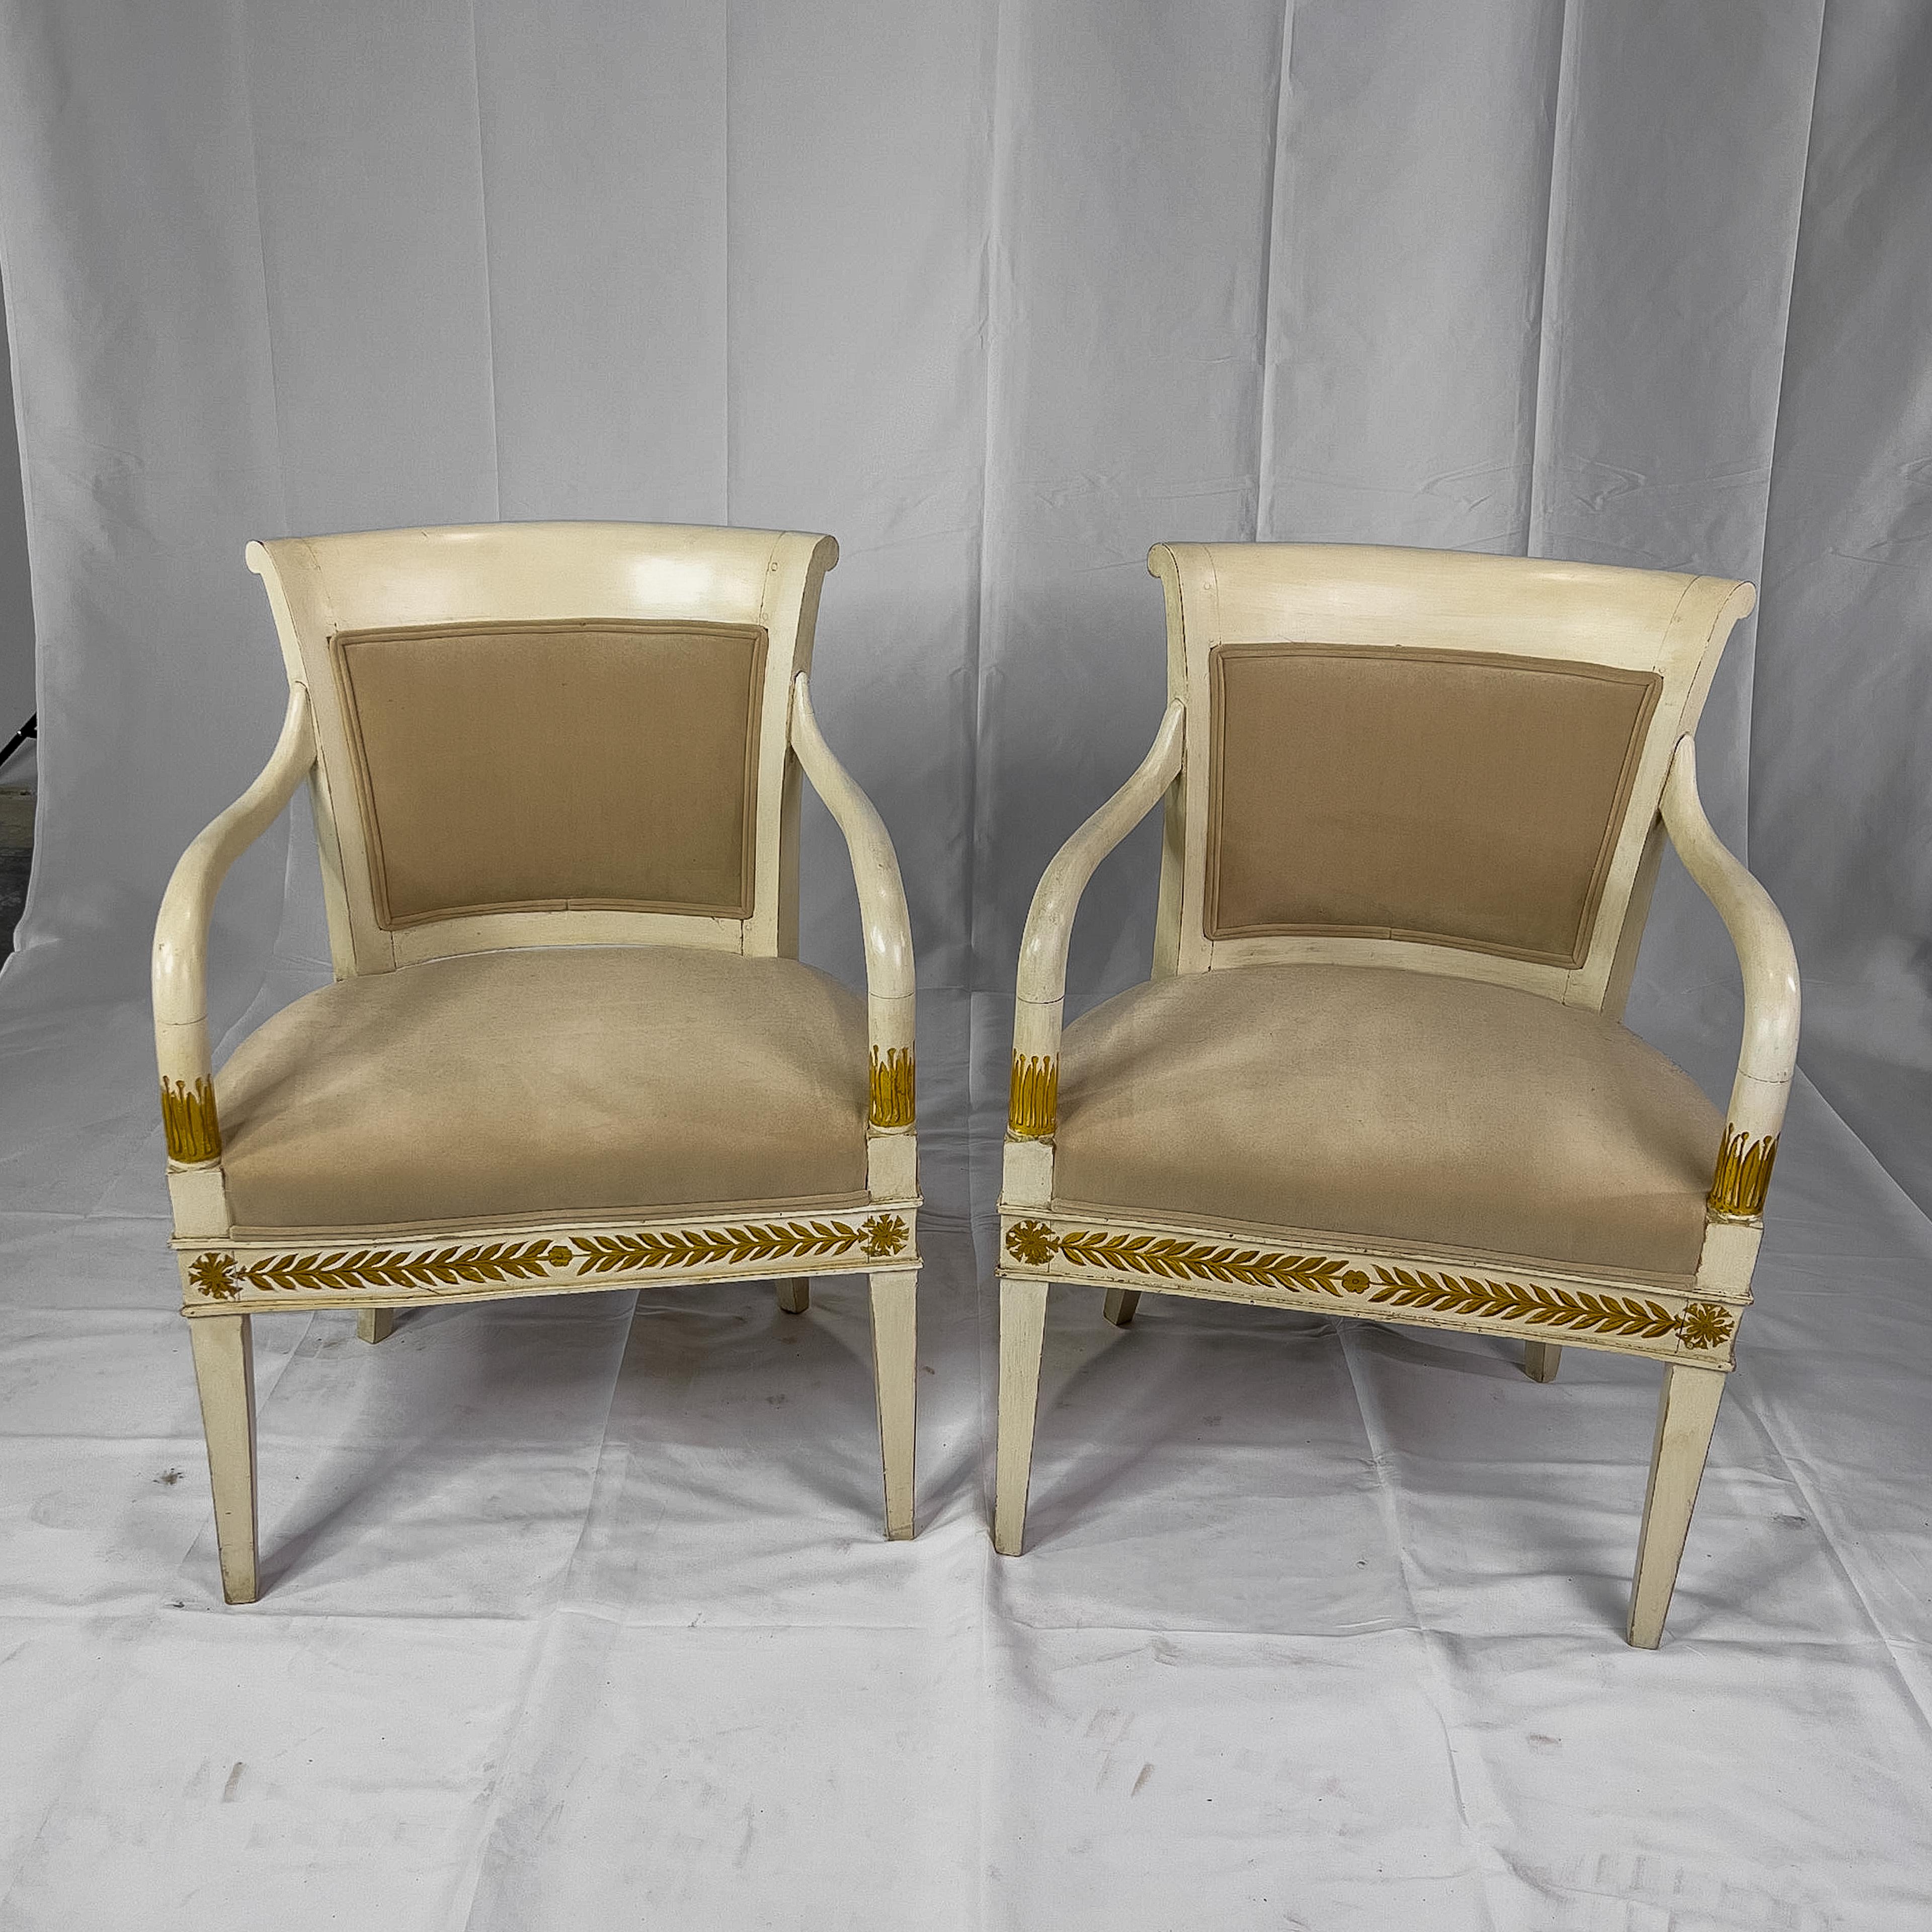 bemalter italienischer Sessel des 19. Jahrhunderts im neoklassischen Stil mit vergoldeten Details, abgerundeter Rückenlehne, gepolstertem Sitz und geschwungenen Armlehnen.